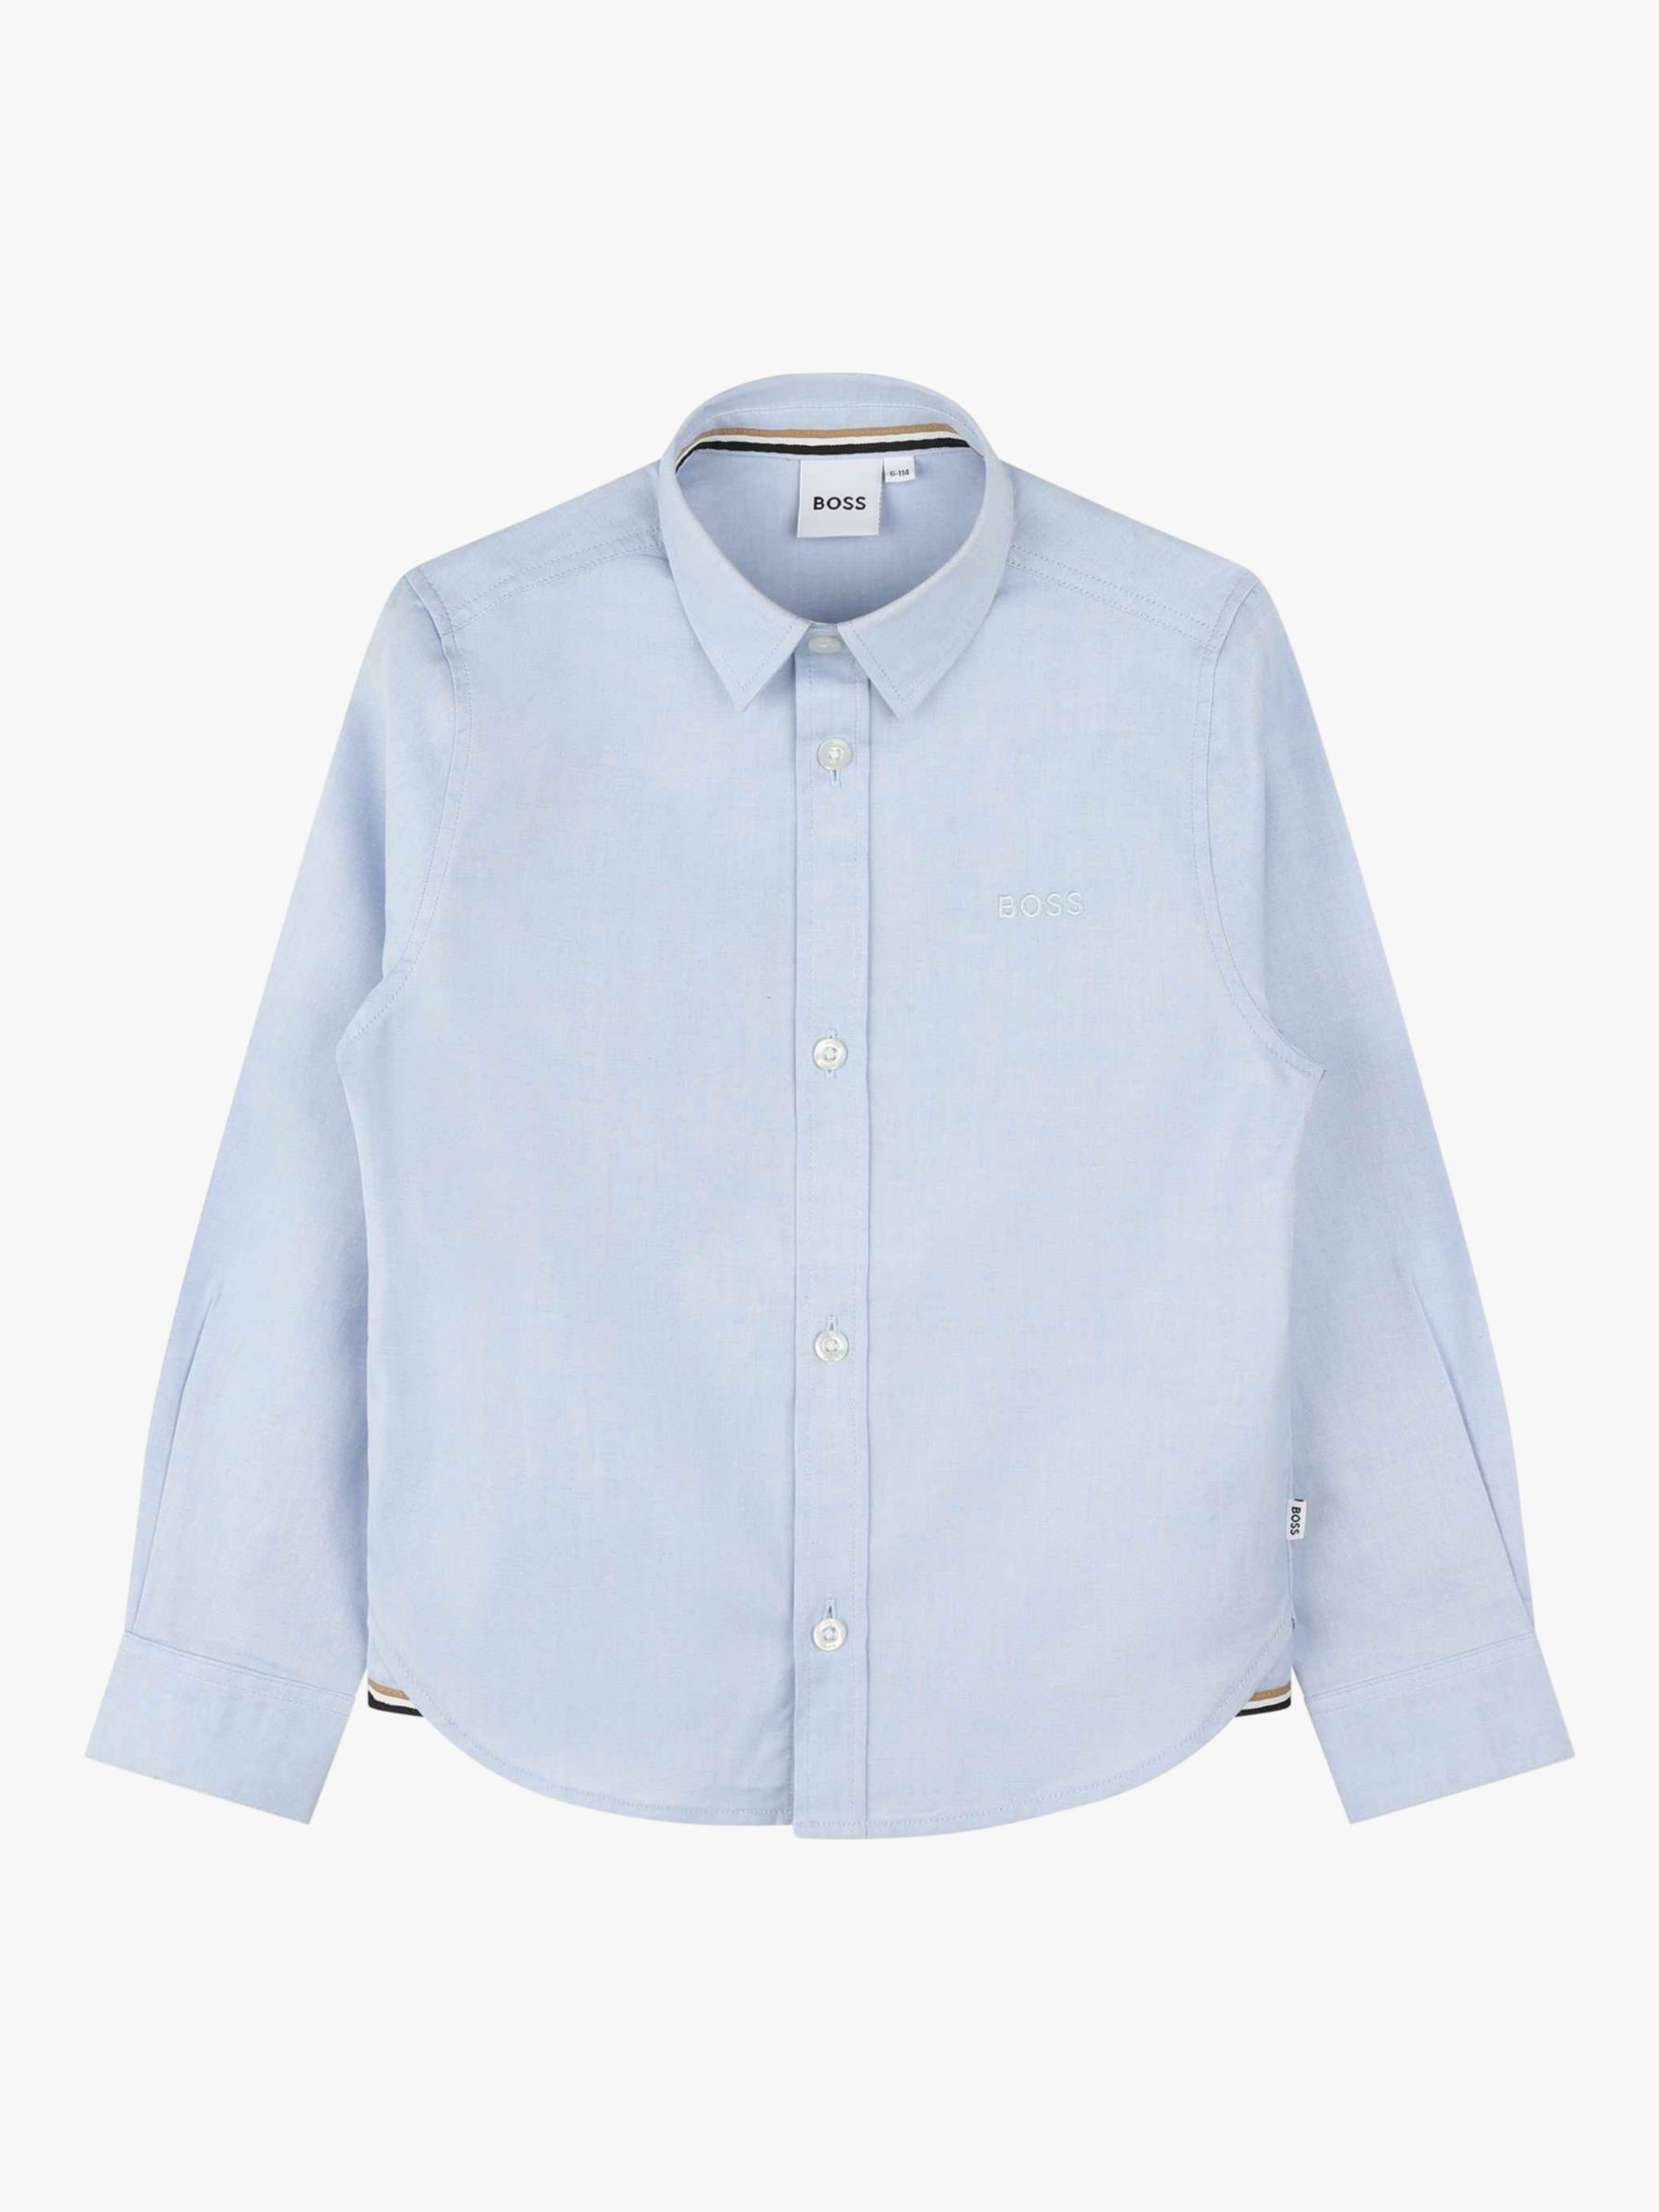 Детская оксфордская рубашка BOSS с длинным рукавом HUGO BOSS, светло-синий рубашка из ткани оксфорд с вышитым логотипом l разноцветный